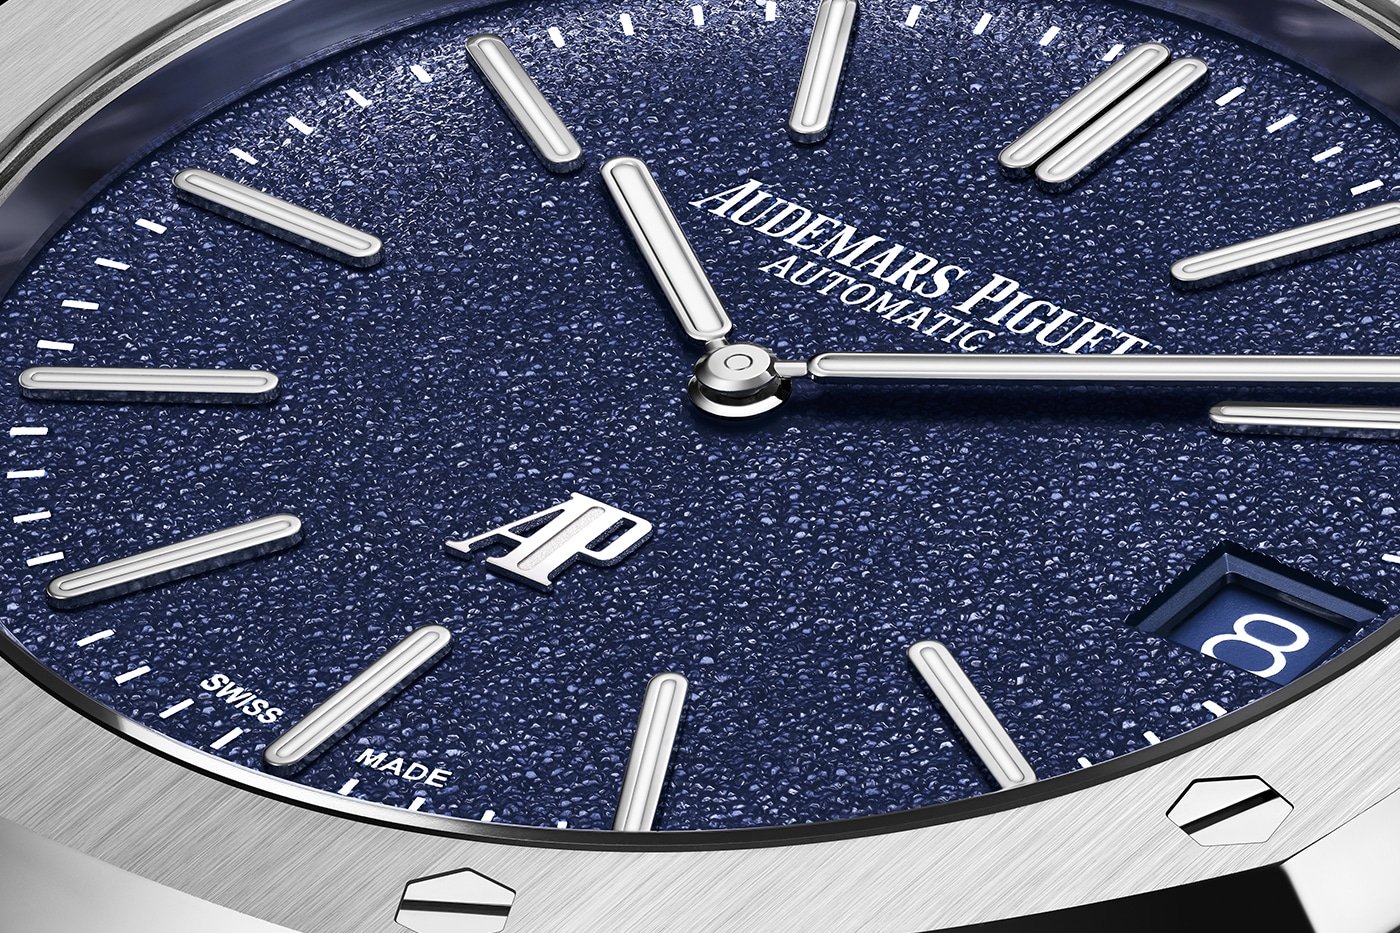 nieuwe 2023 Audemars Piguet-horloges